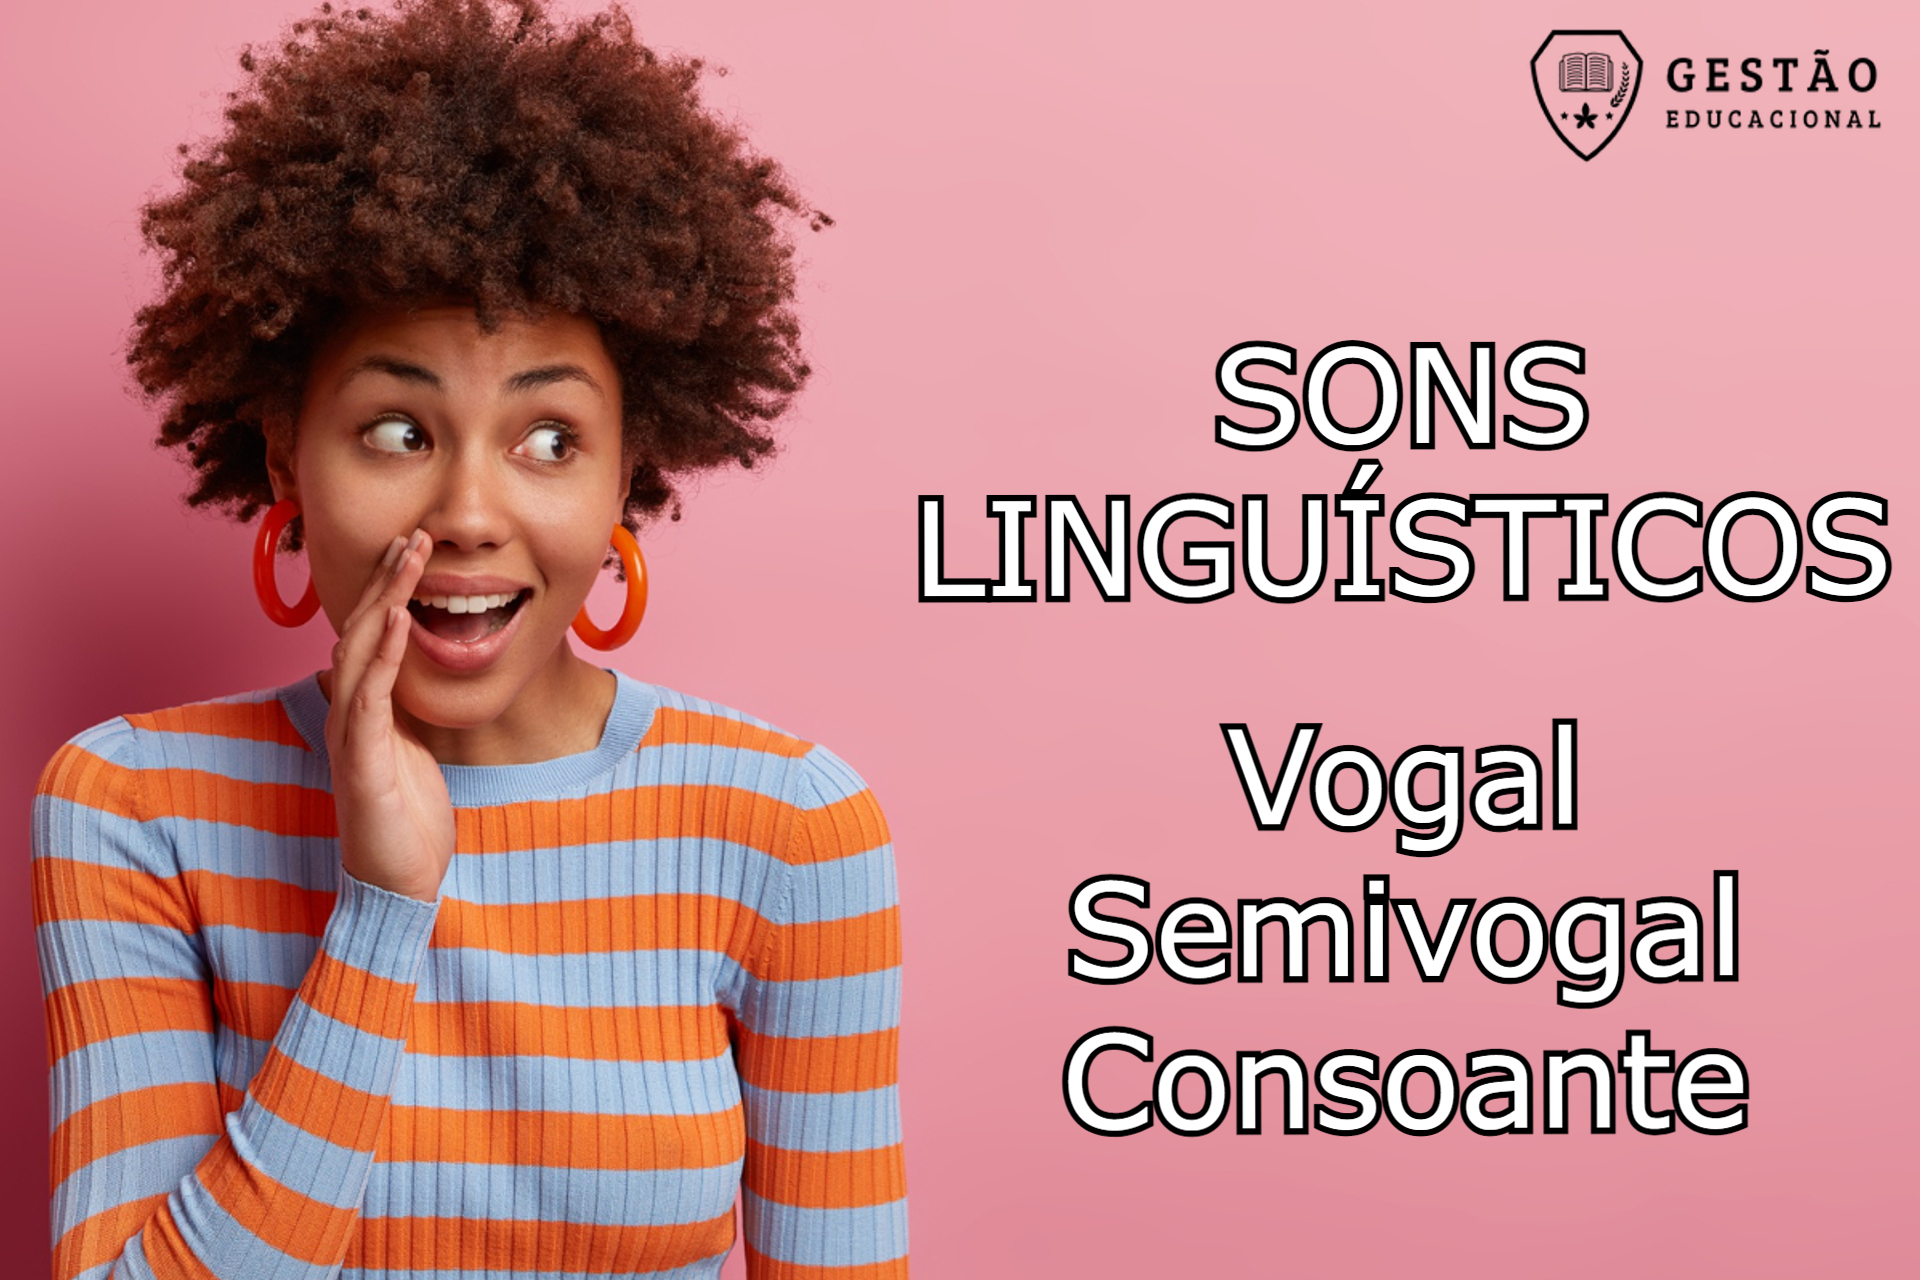 Classificação dos Sons Linguísticos: Vogal, Semivogal e Consoante (Imagem: Gestão Educacional - Wayhomestudio/FreePik.com)